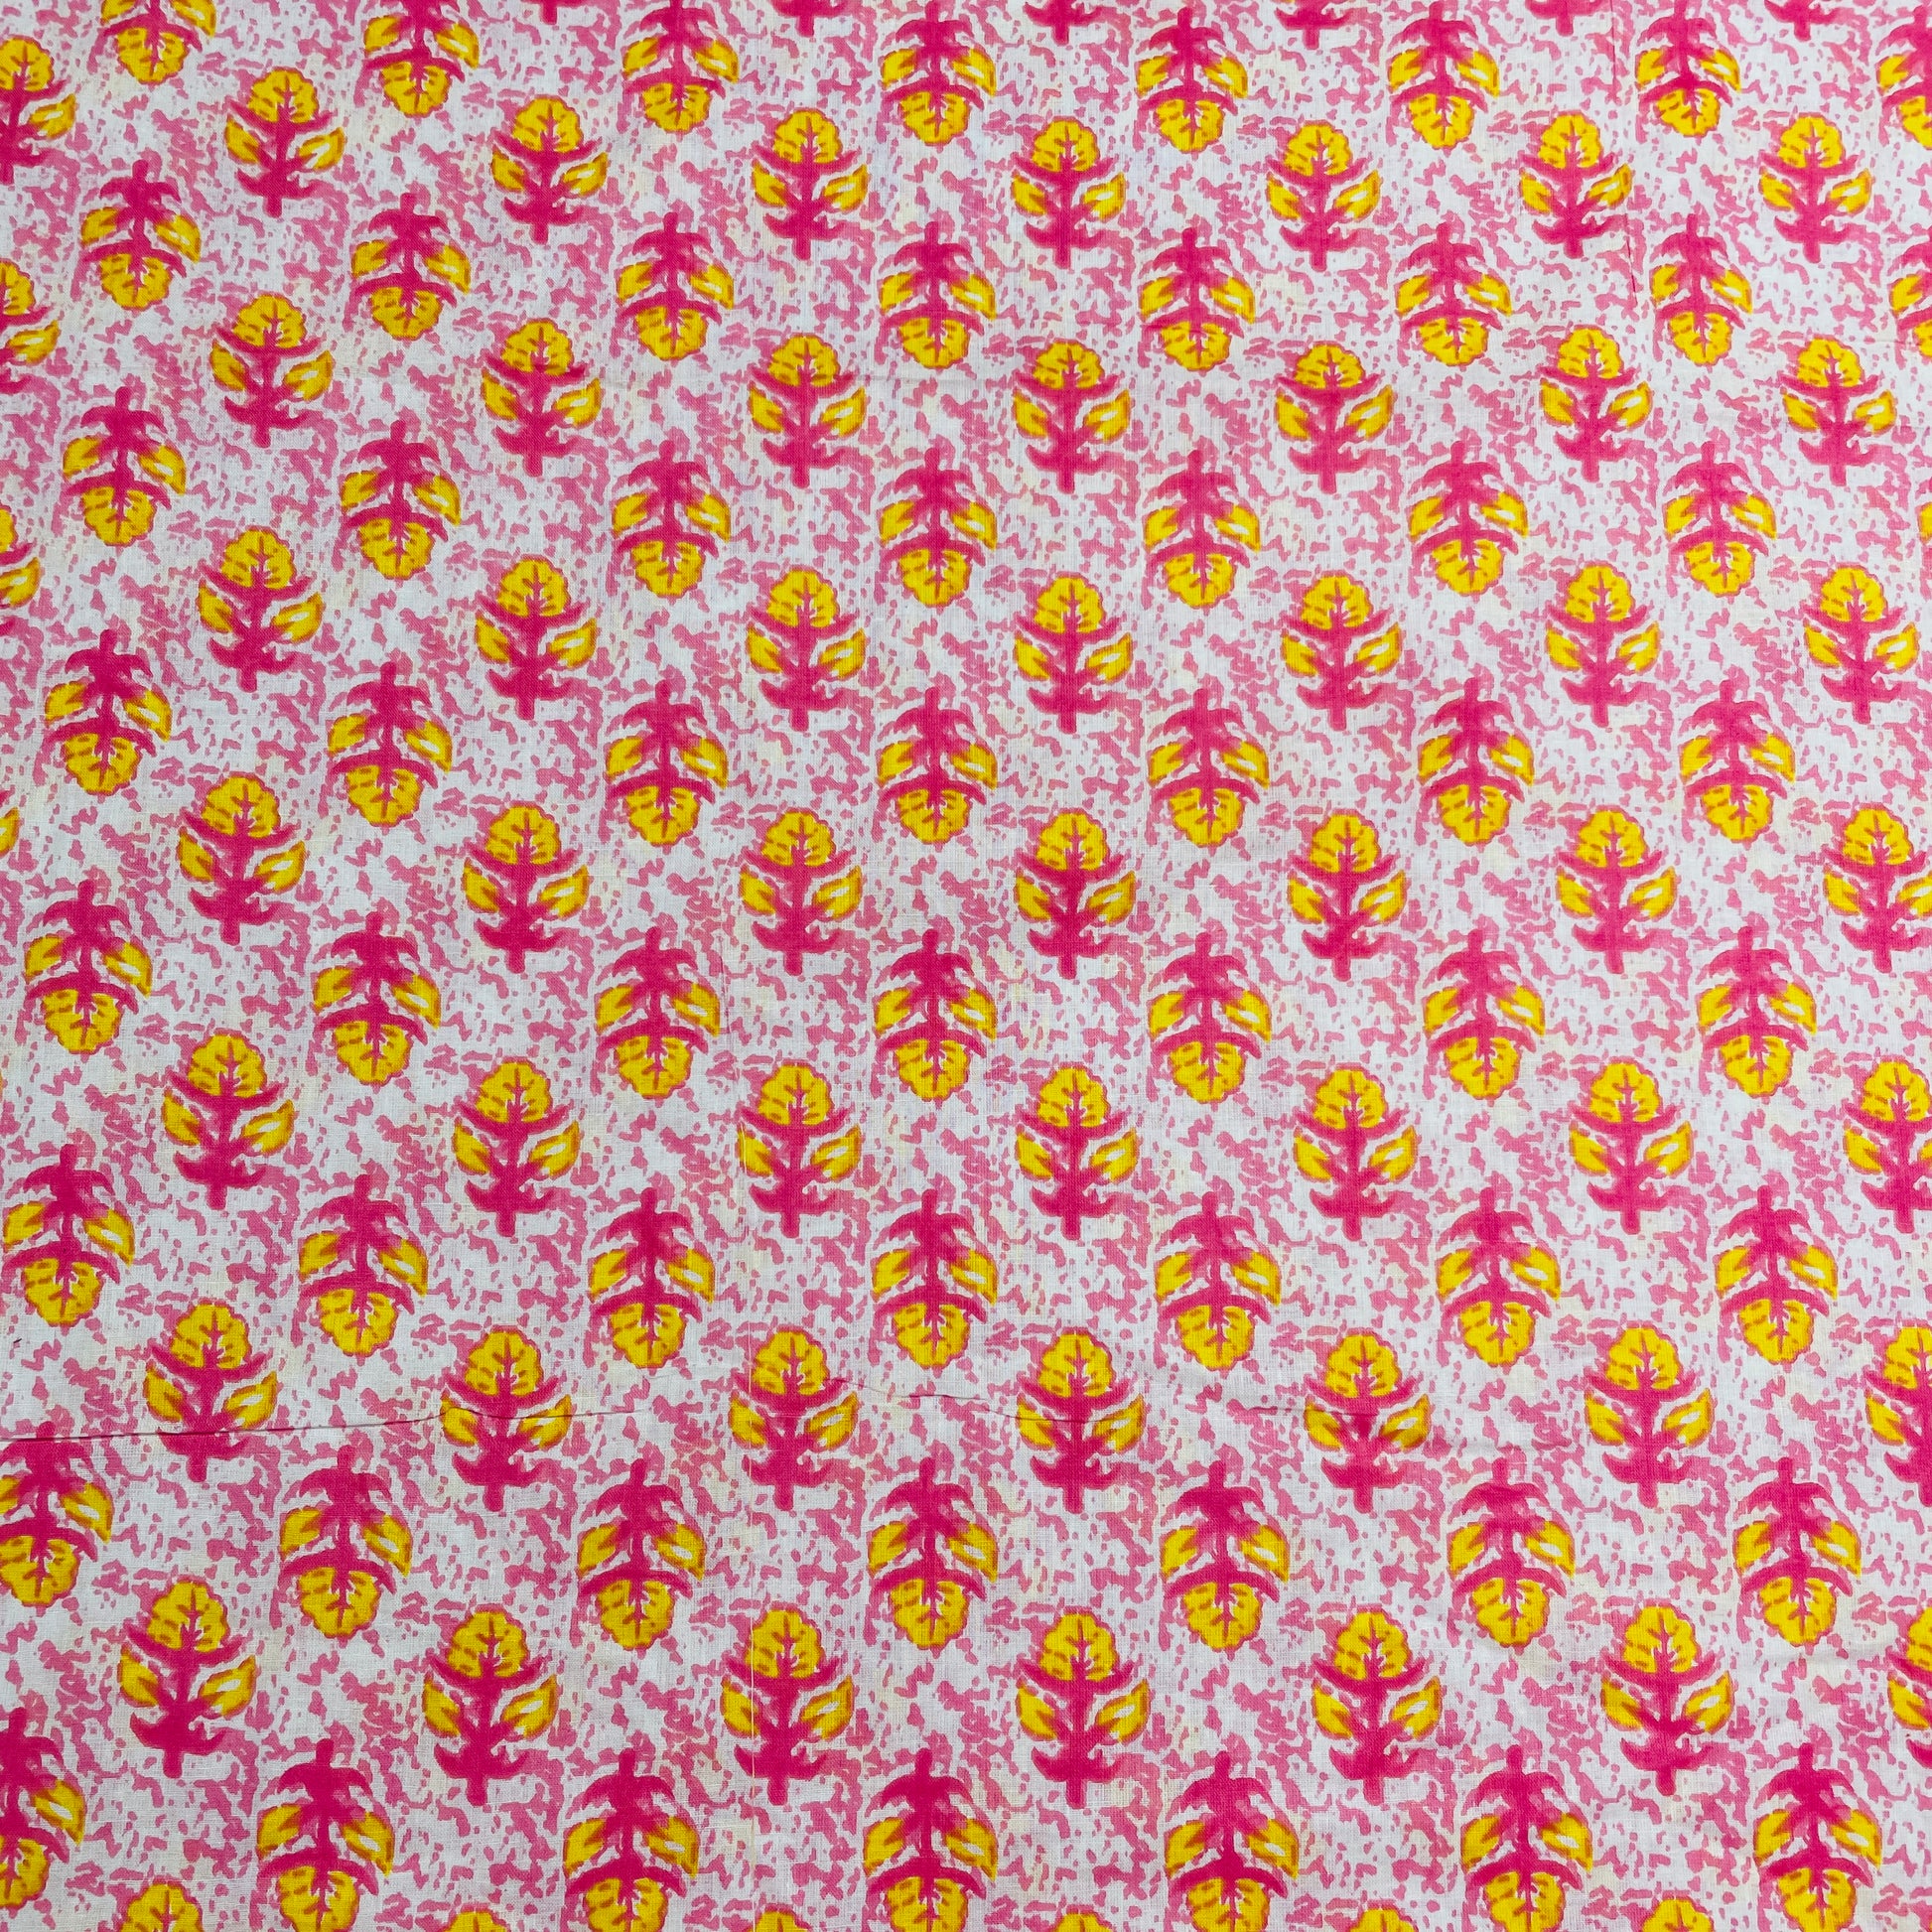 White & Yellow Floral Print Cotton Fabric - TradeUNO